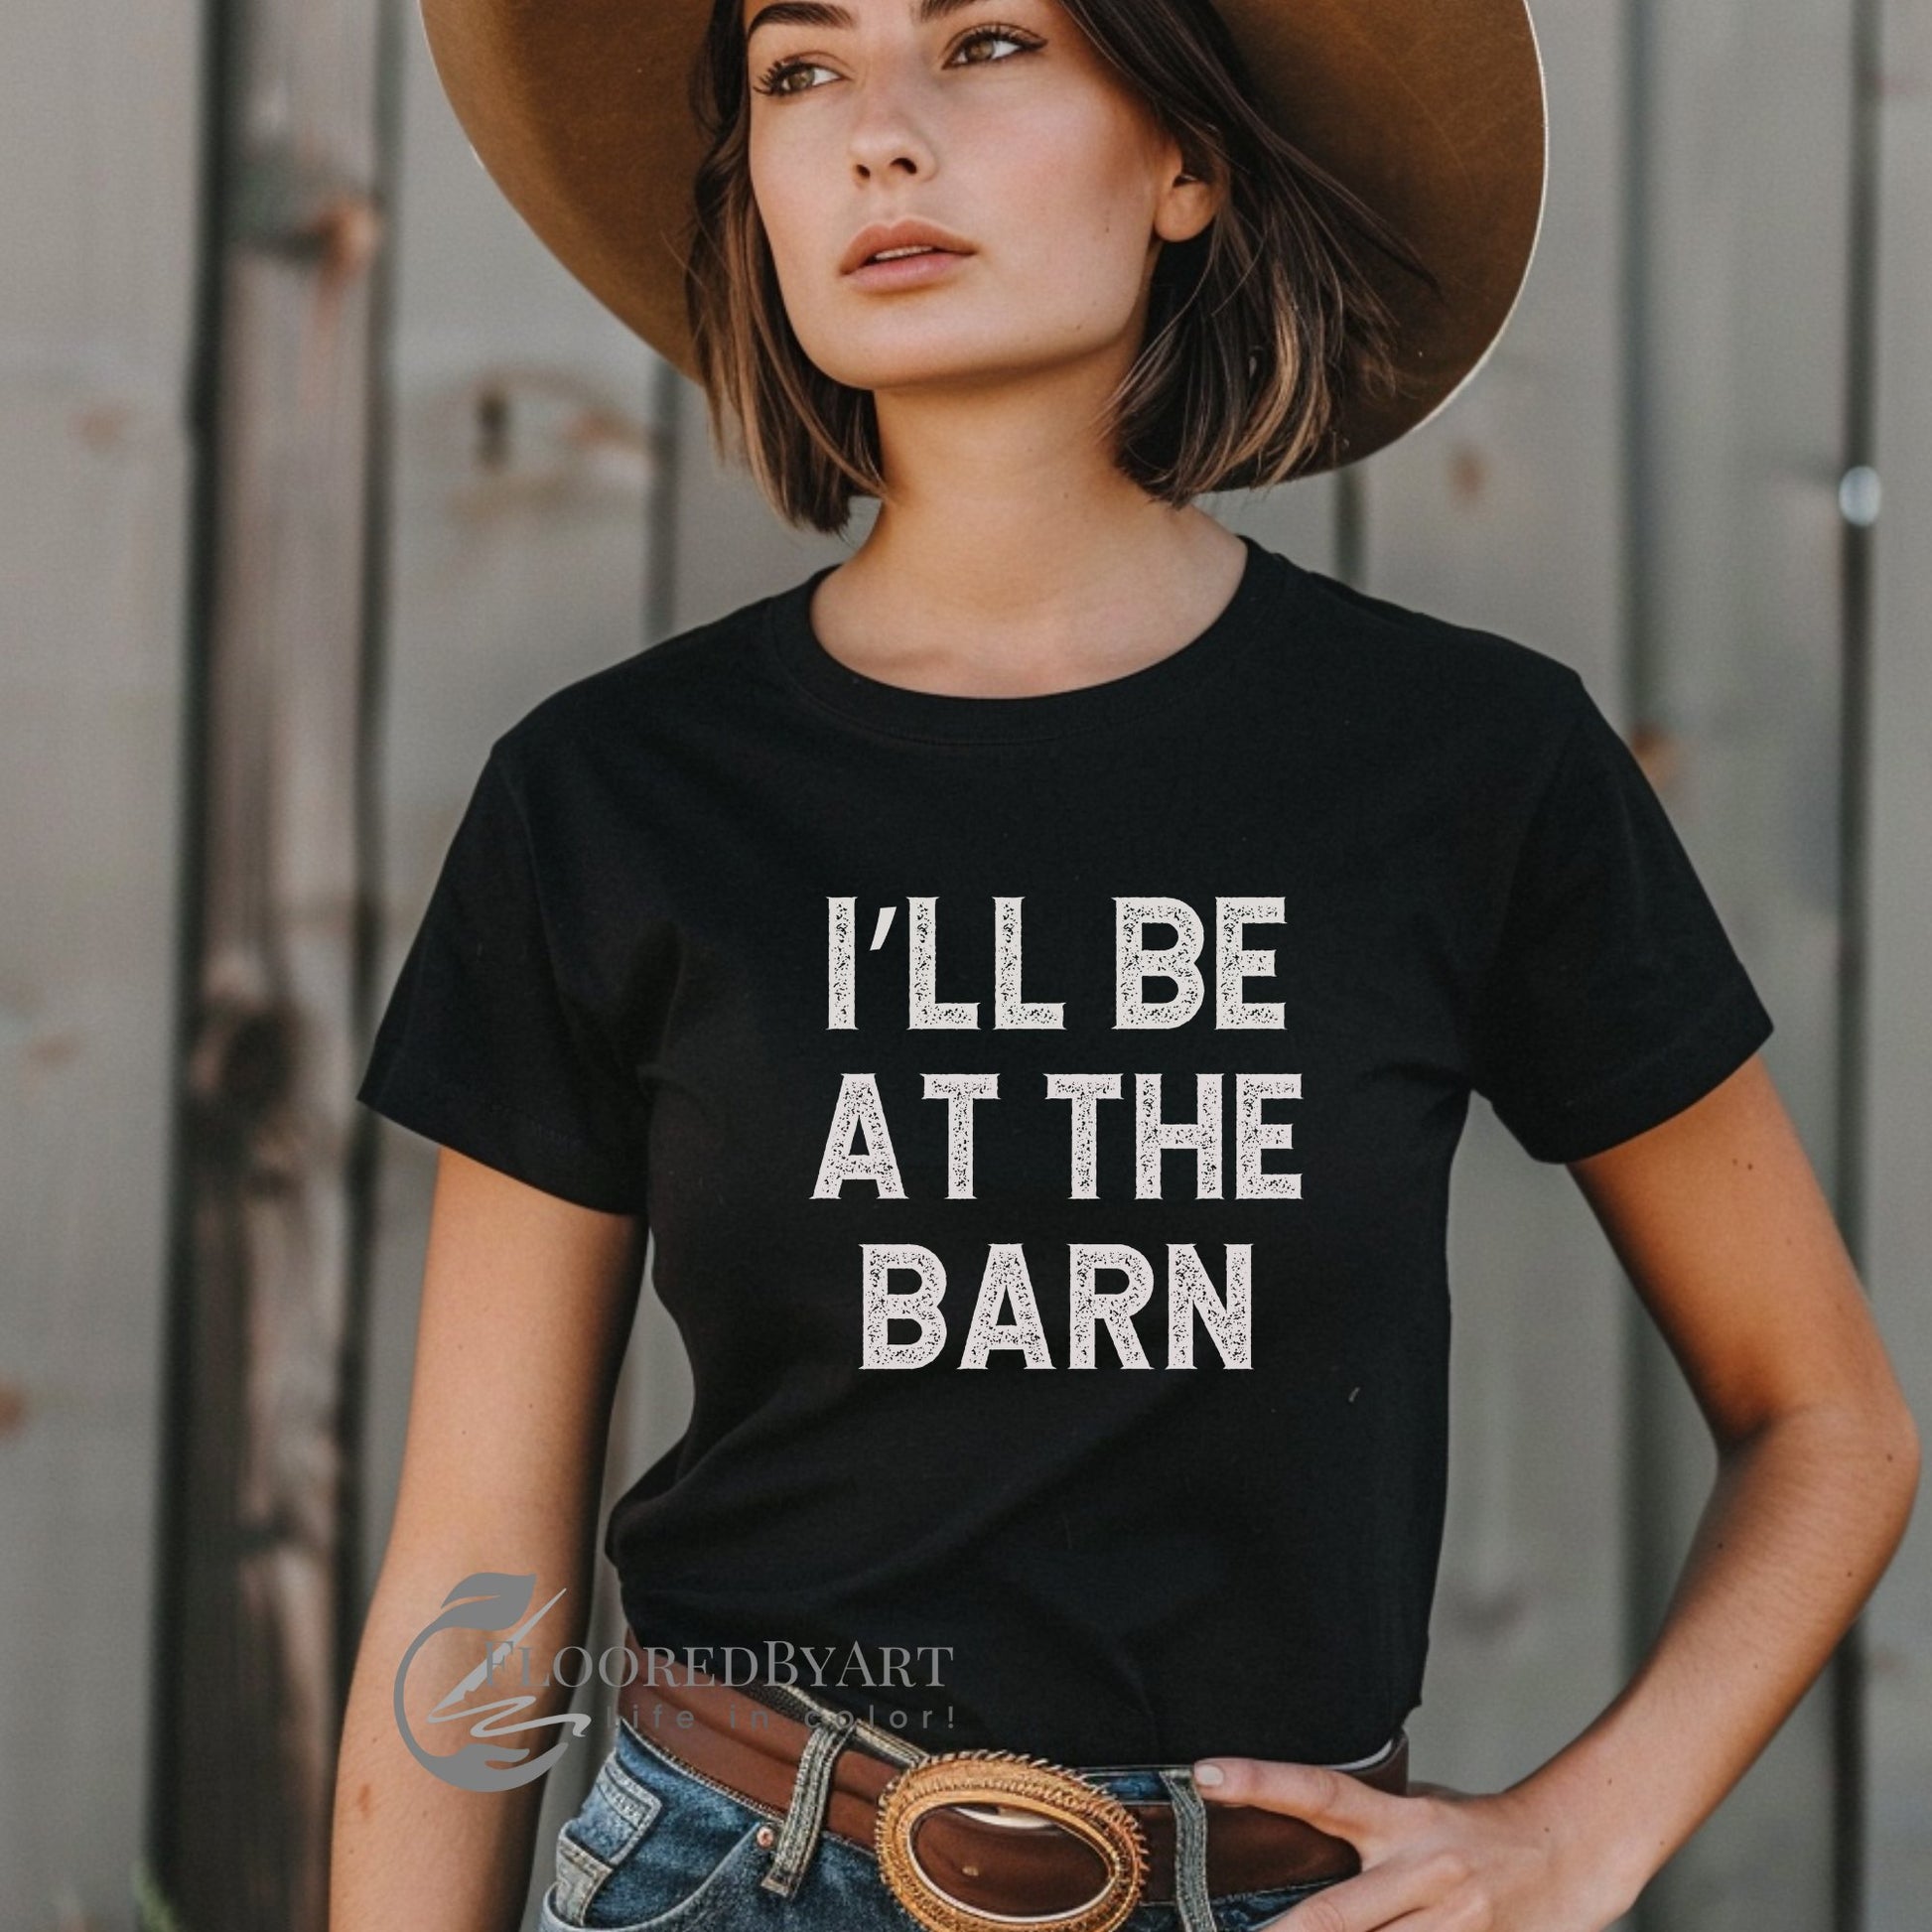 Funny Horse Person Shirt, I'll be at the Barn Shirt, Perfect Horse Person Gift - FlooredByArt